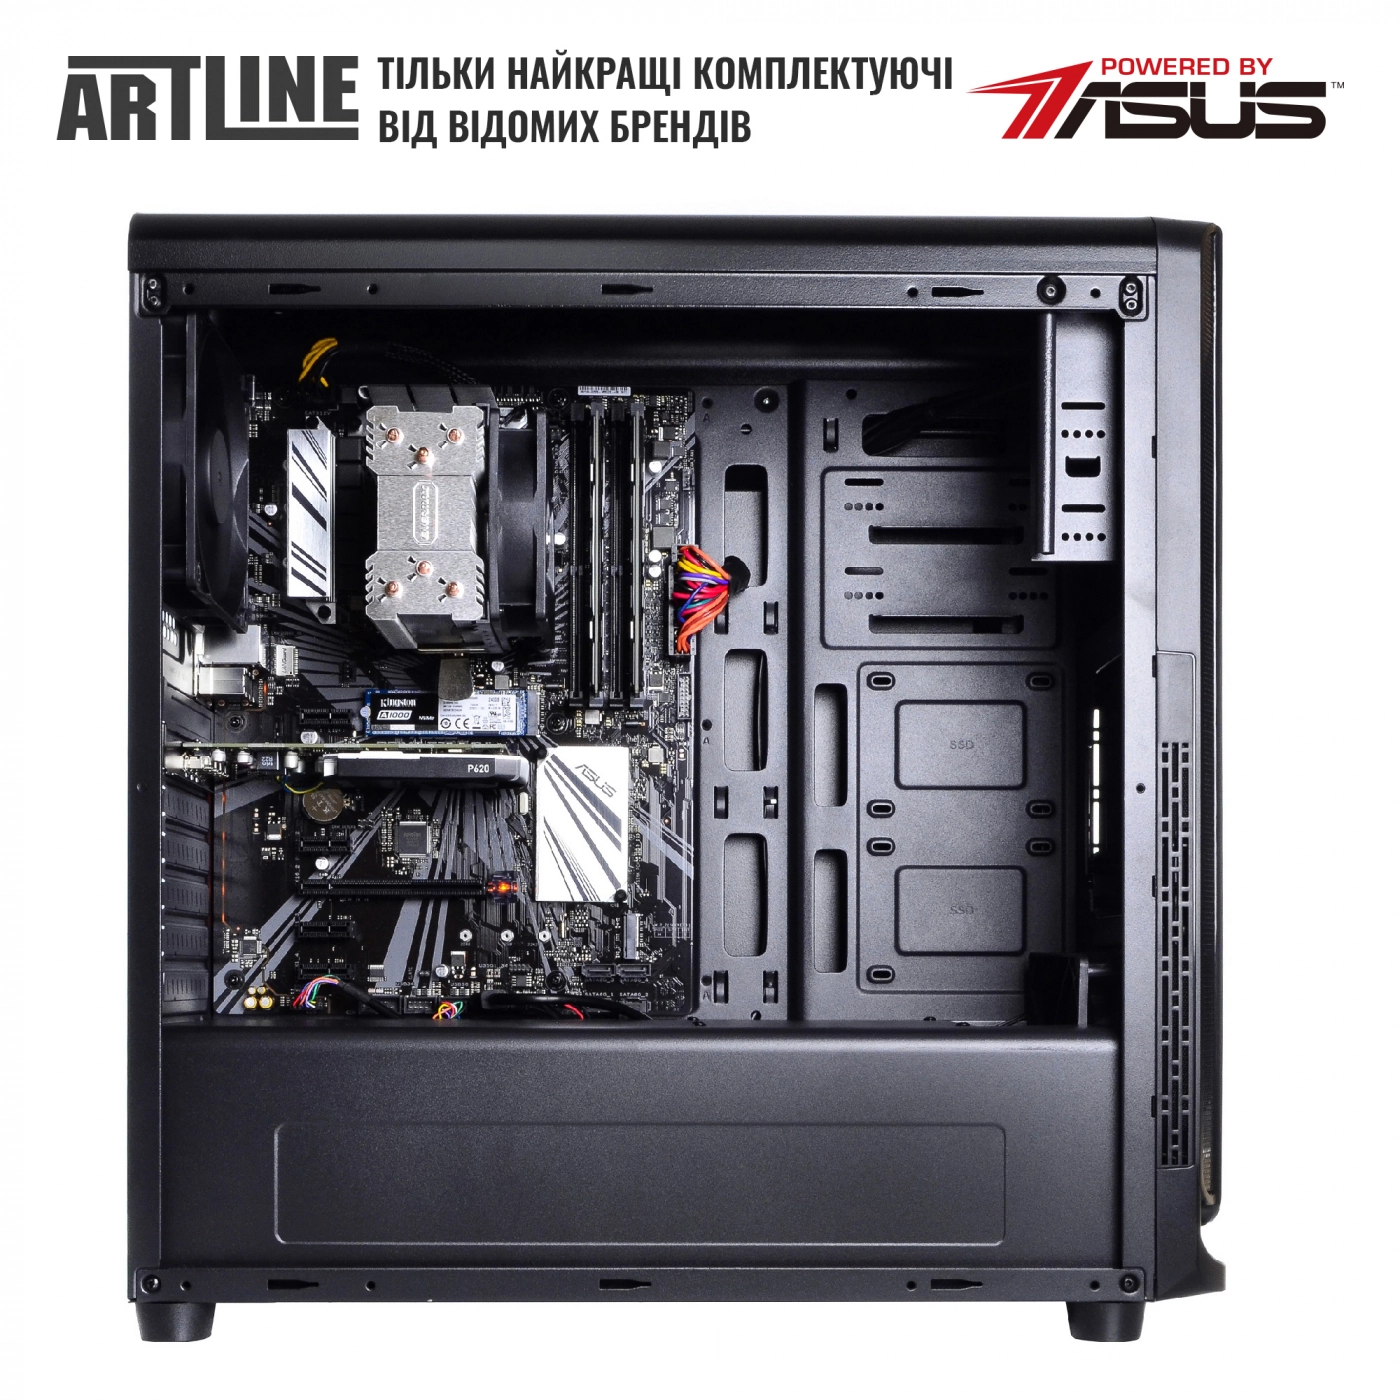 Купить Сервер ARTLINE Business T19v18 - фото 5